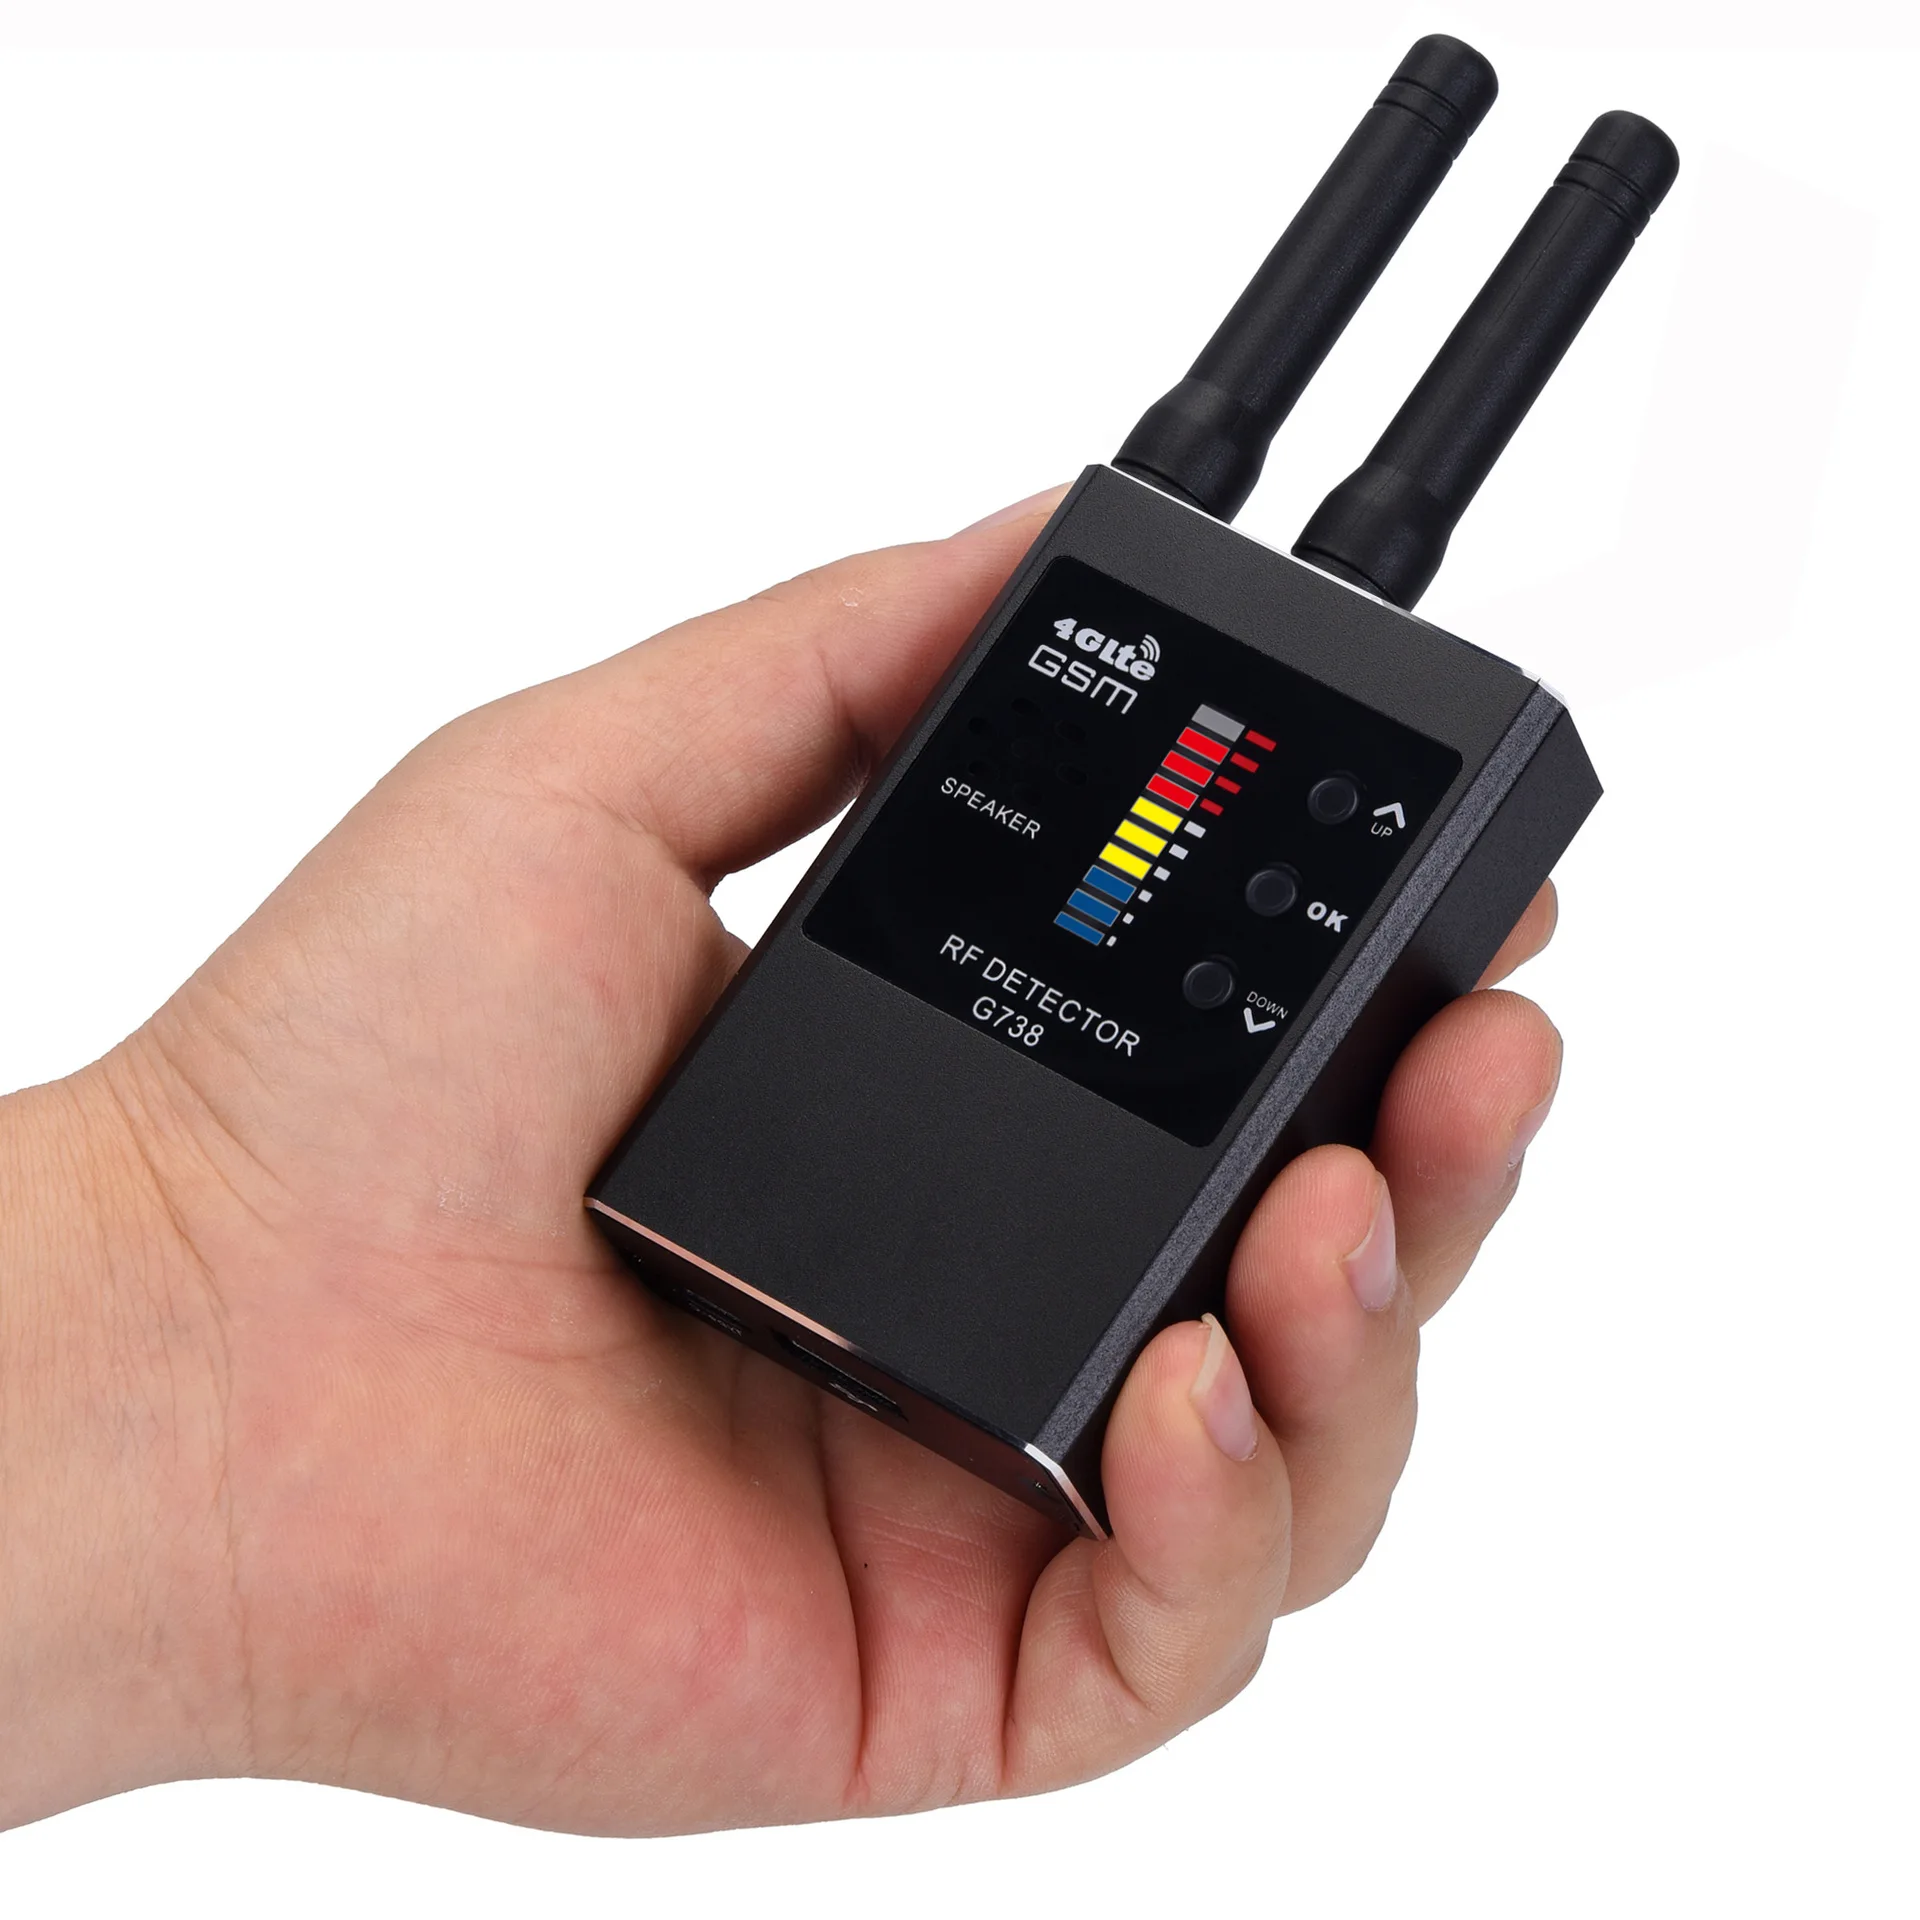 Radio Spy Camera Finder GPS Tracker lnfrared Scanning G738 RF Detector Smart Strong Magnetic Detection Hidden Device Detector enlarge